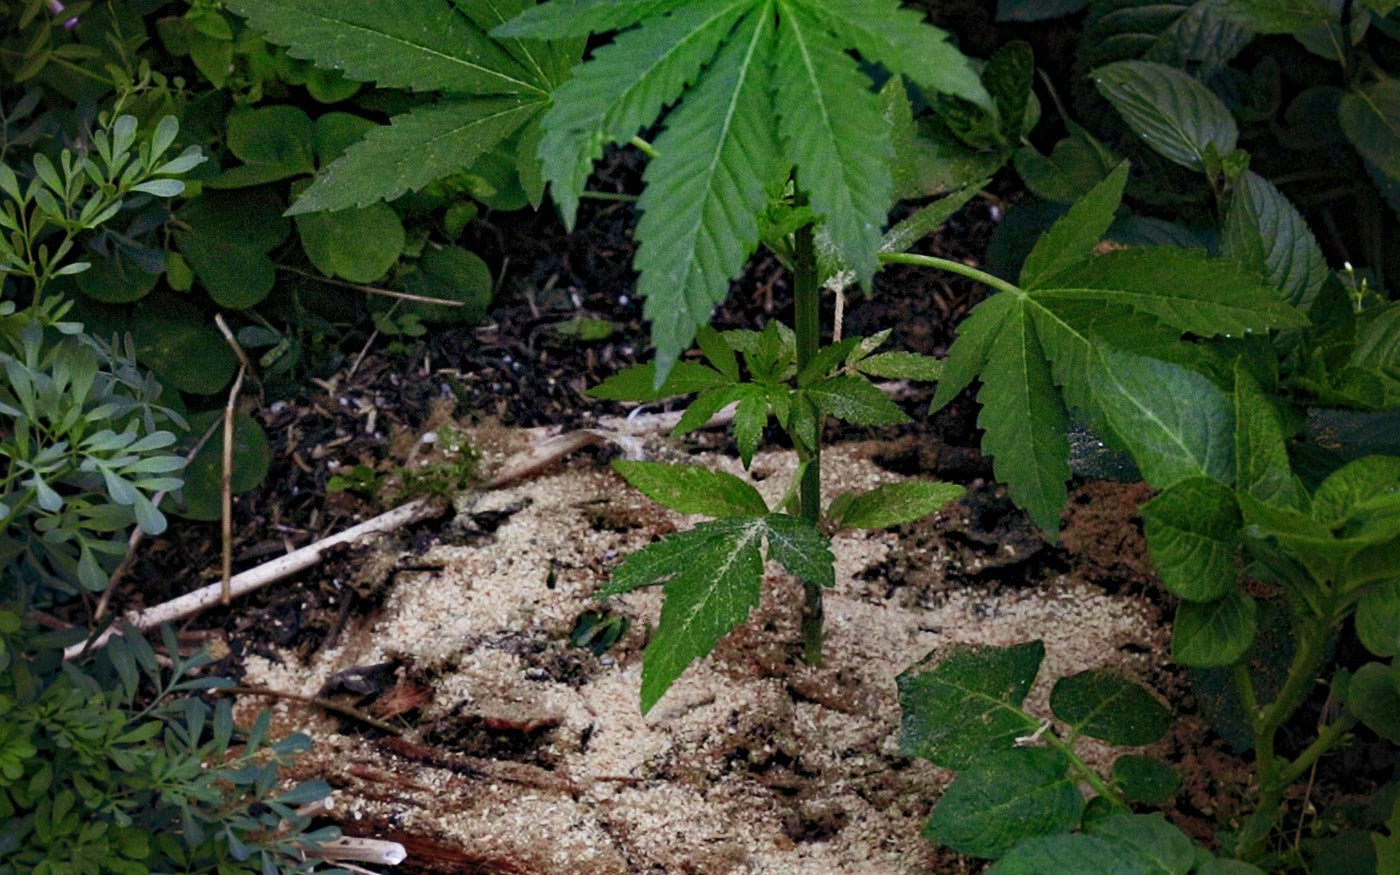 Suelo con enmiendas donde se cultivó marihuana y otras plantas